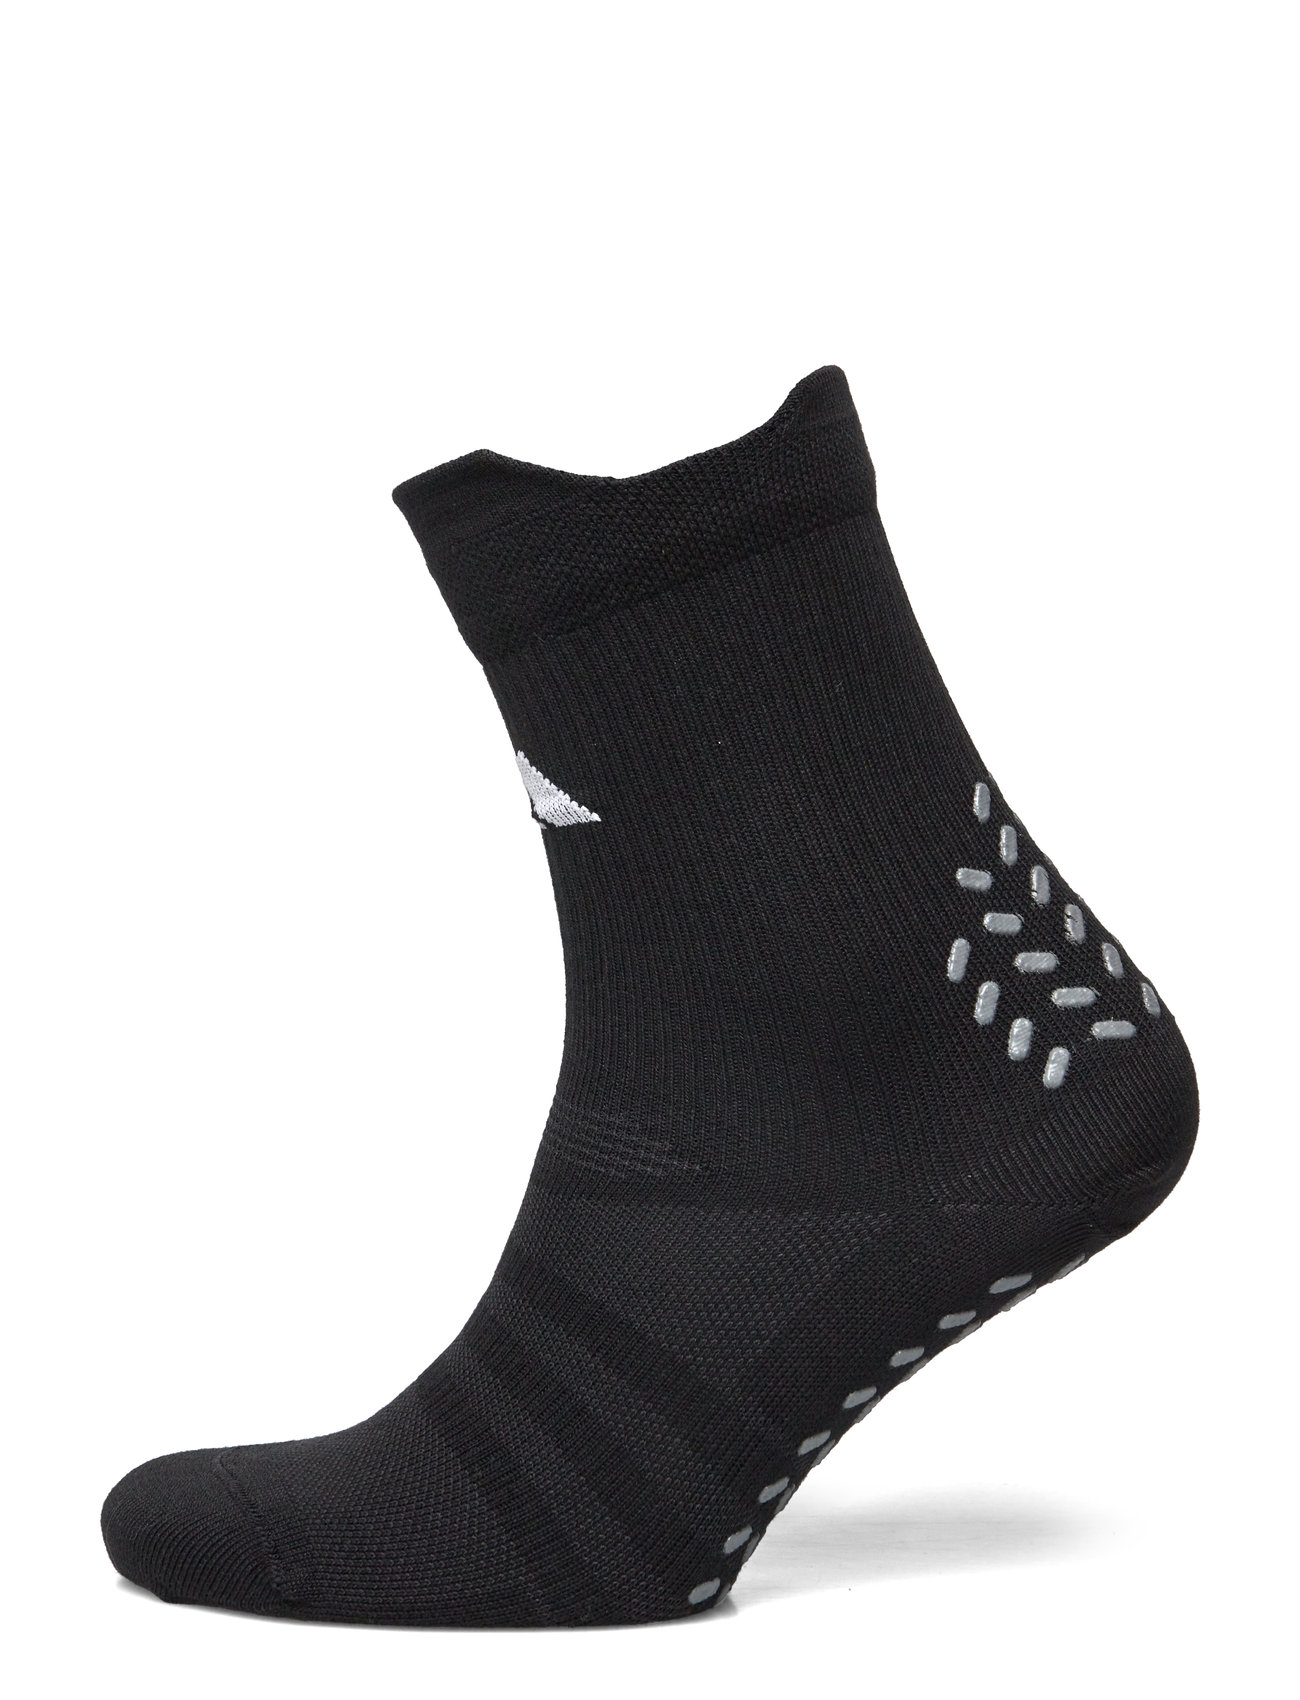 Adidas Football Grip Printed Crew Performance Socks Light Sport Socks Regular Socks Black Adidas Performance